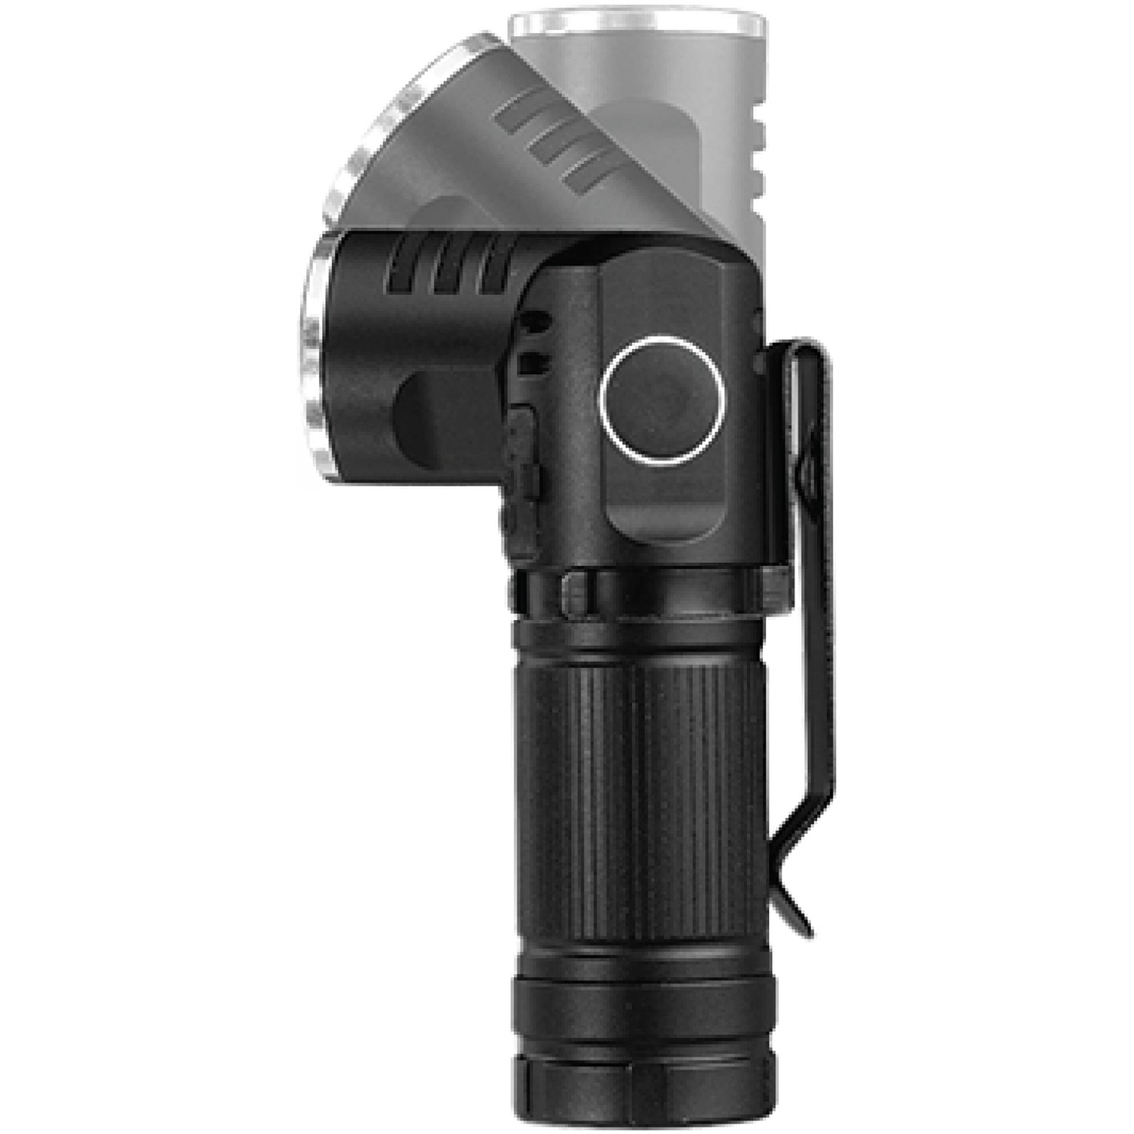 Feit Electric FL500 Mini LED Flashlight - Image 2 of 3